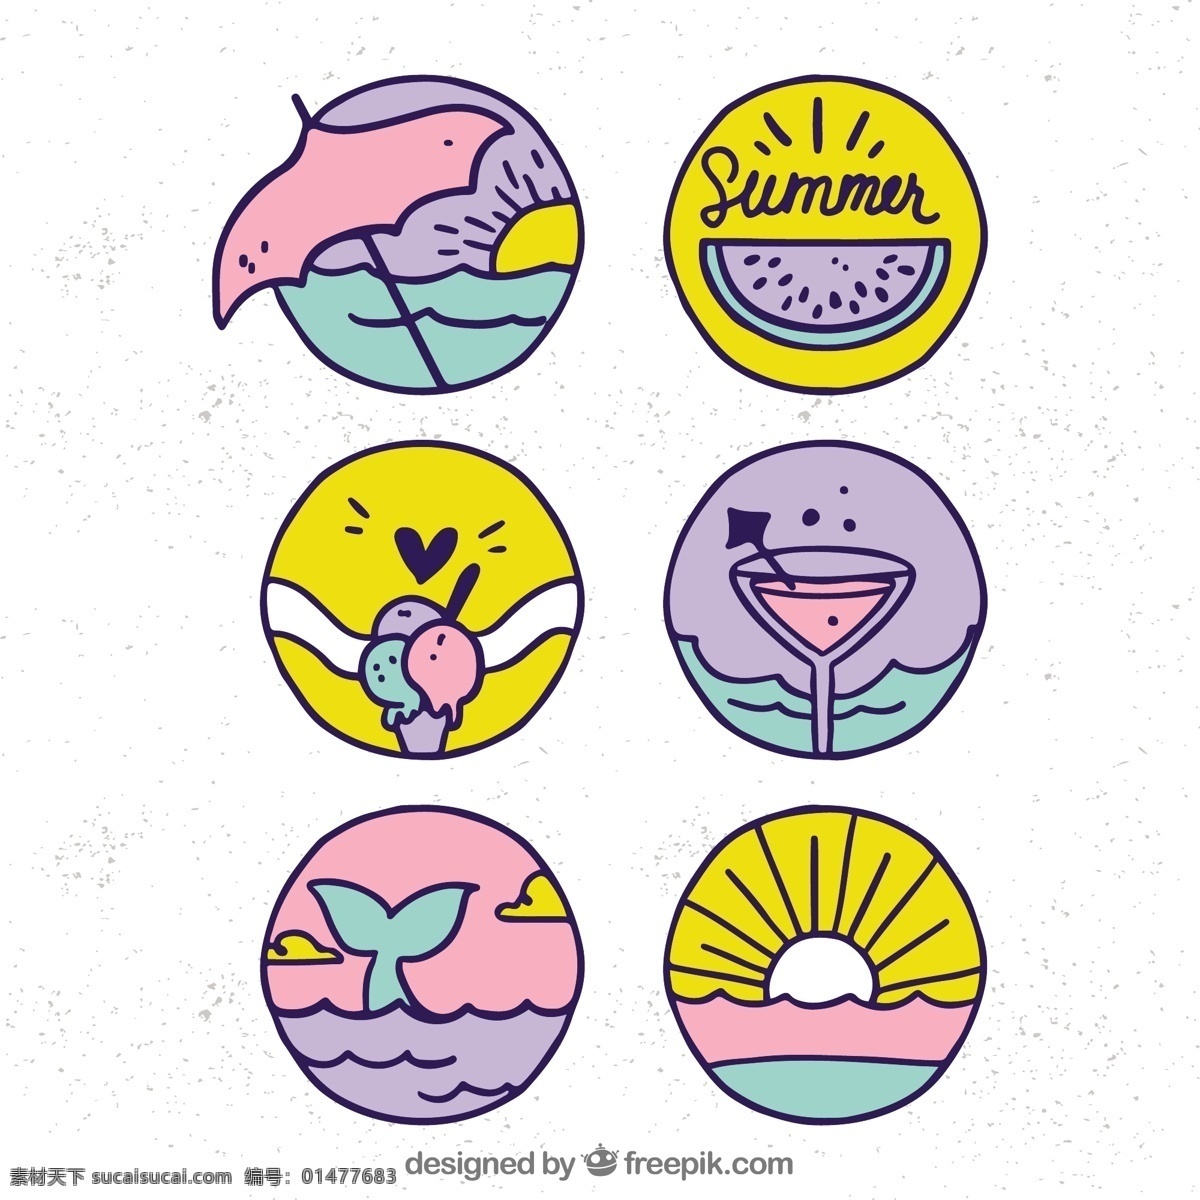 漂亮 手绘 夏季 元素 徽章 图标 漂亮的 夏季元素 徽章图标